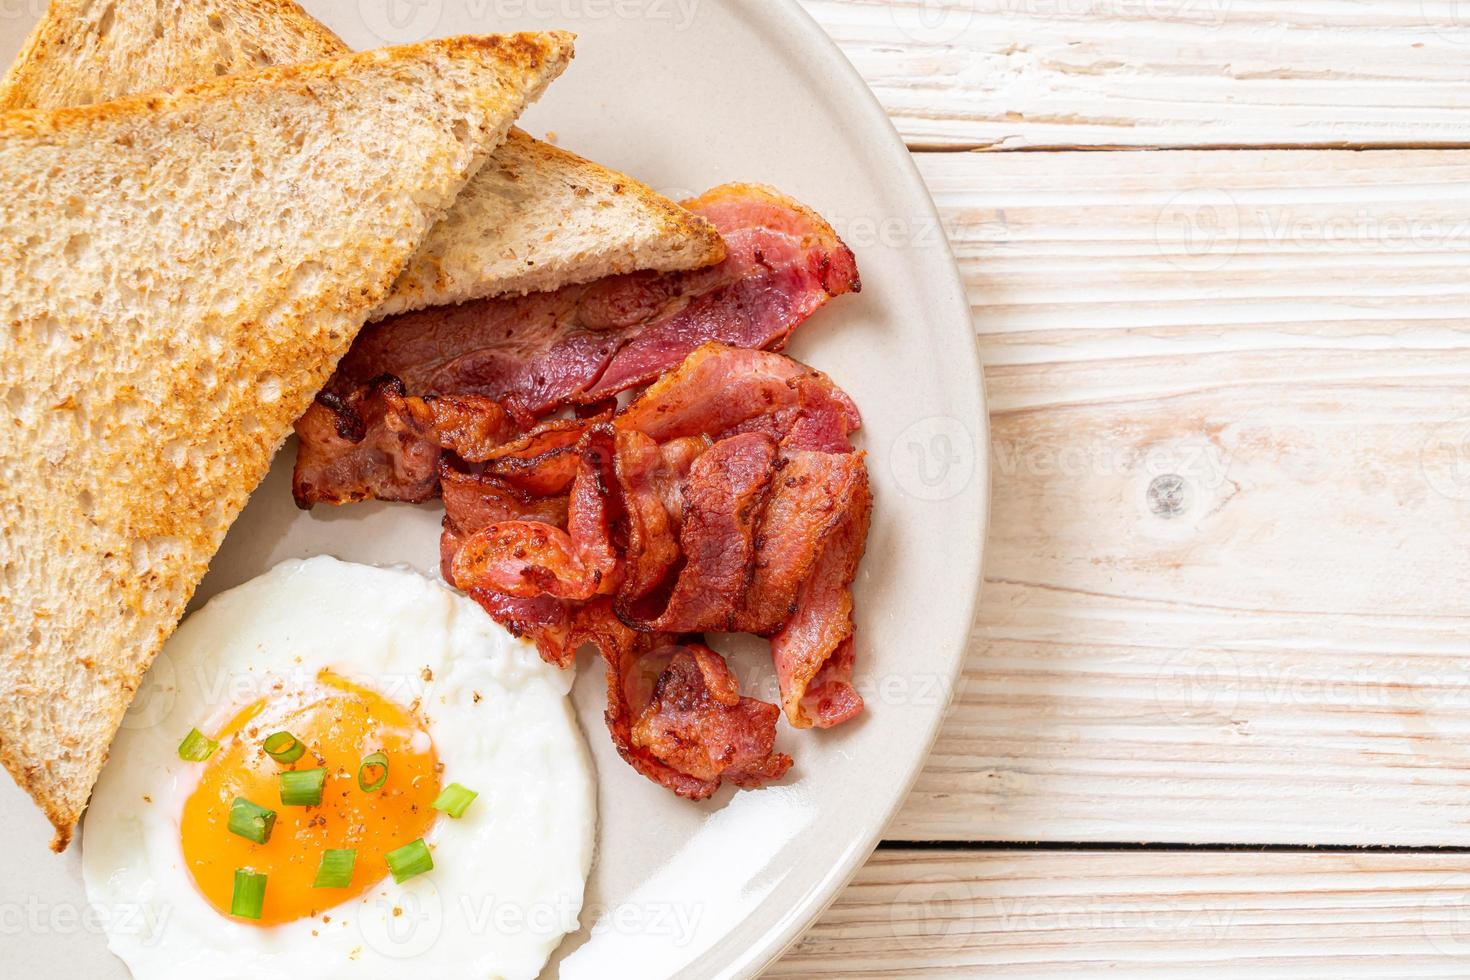 oeuf au plat avec pain grillé et bacon pour le petit déjeuner photo